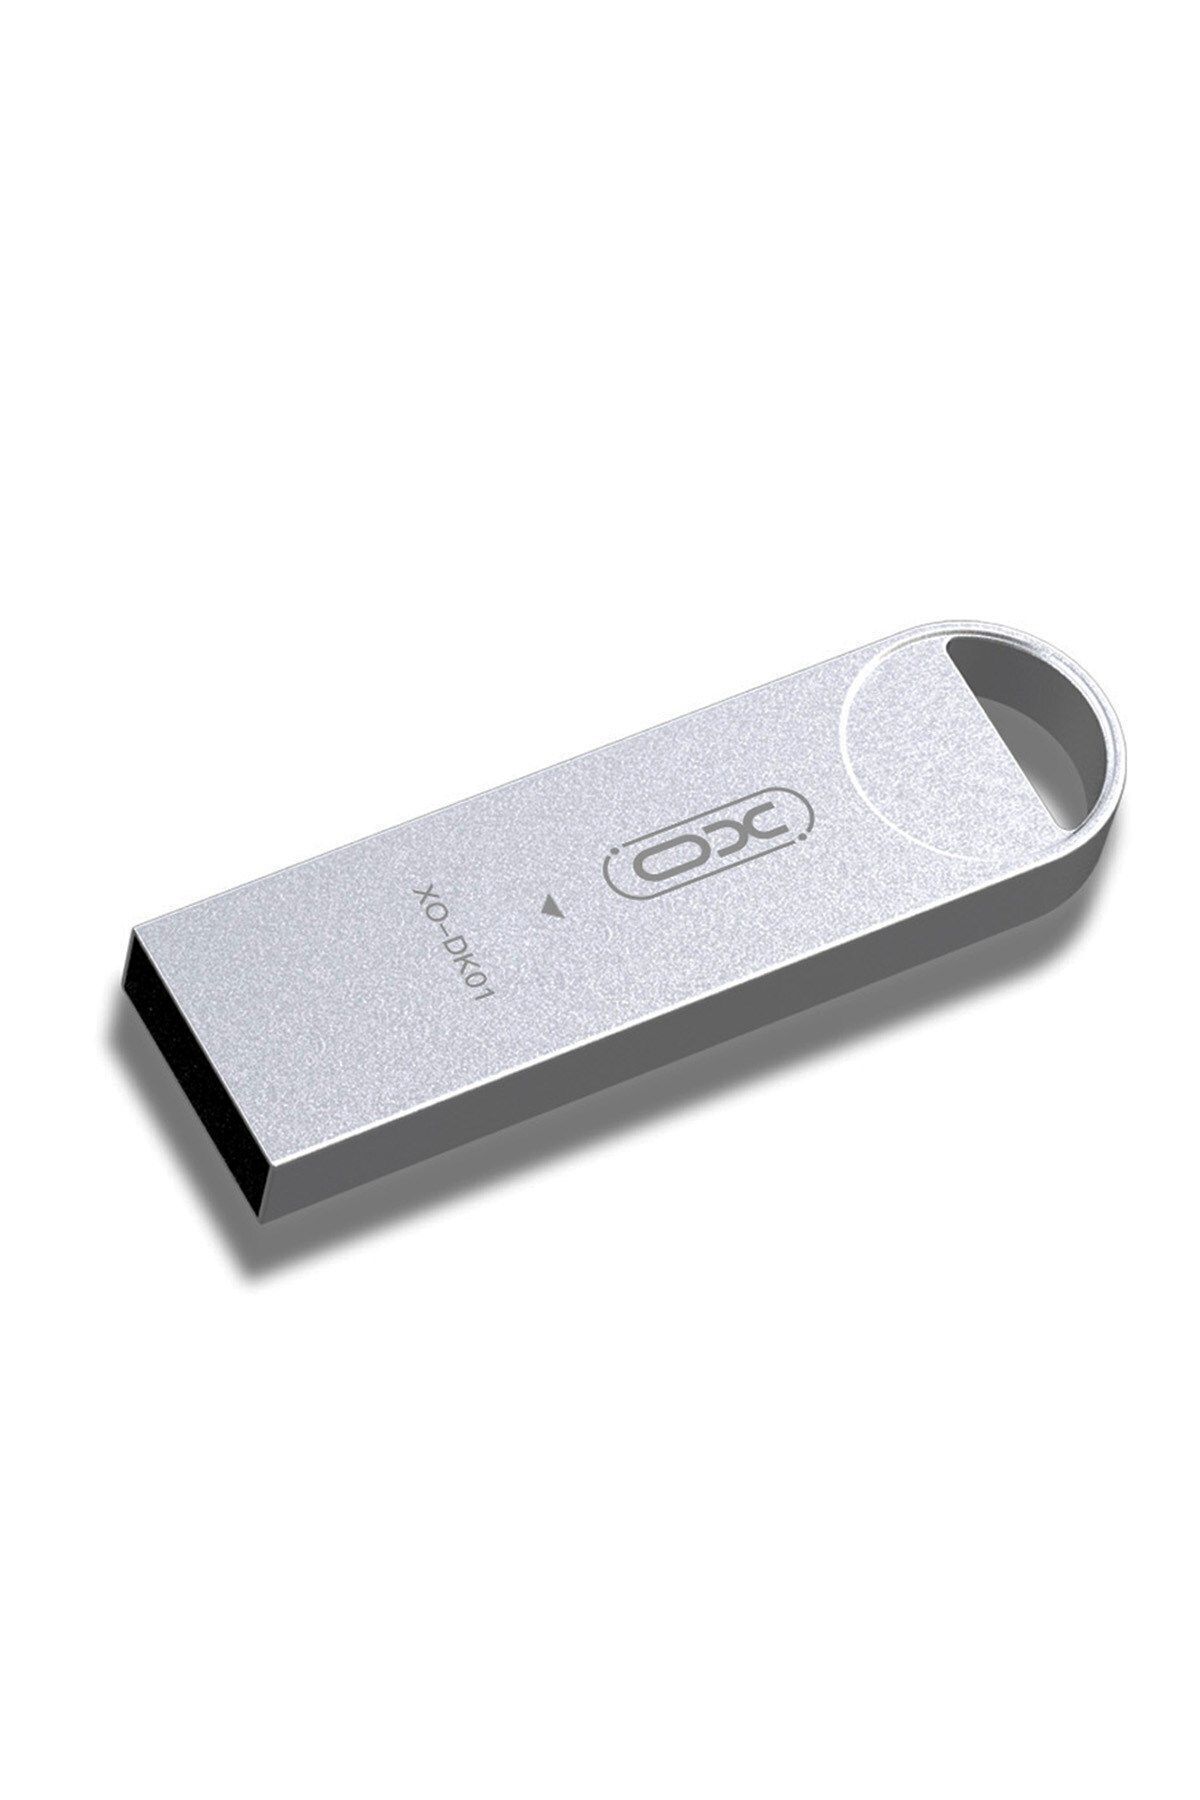 Xo -DK01 8 GB Metal Gövdeli Koruyucu Tasarım USB Bellek Flash Disk